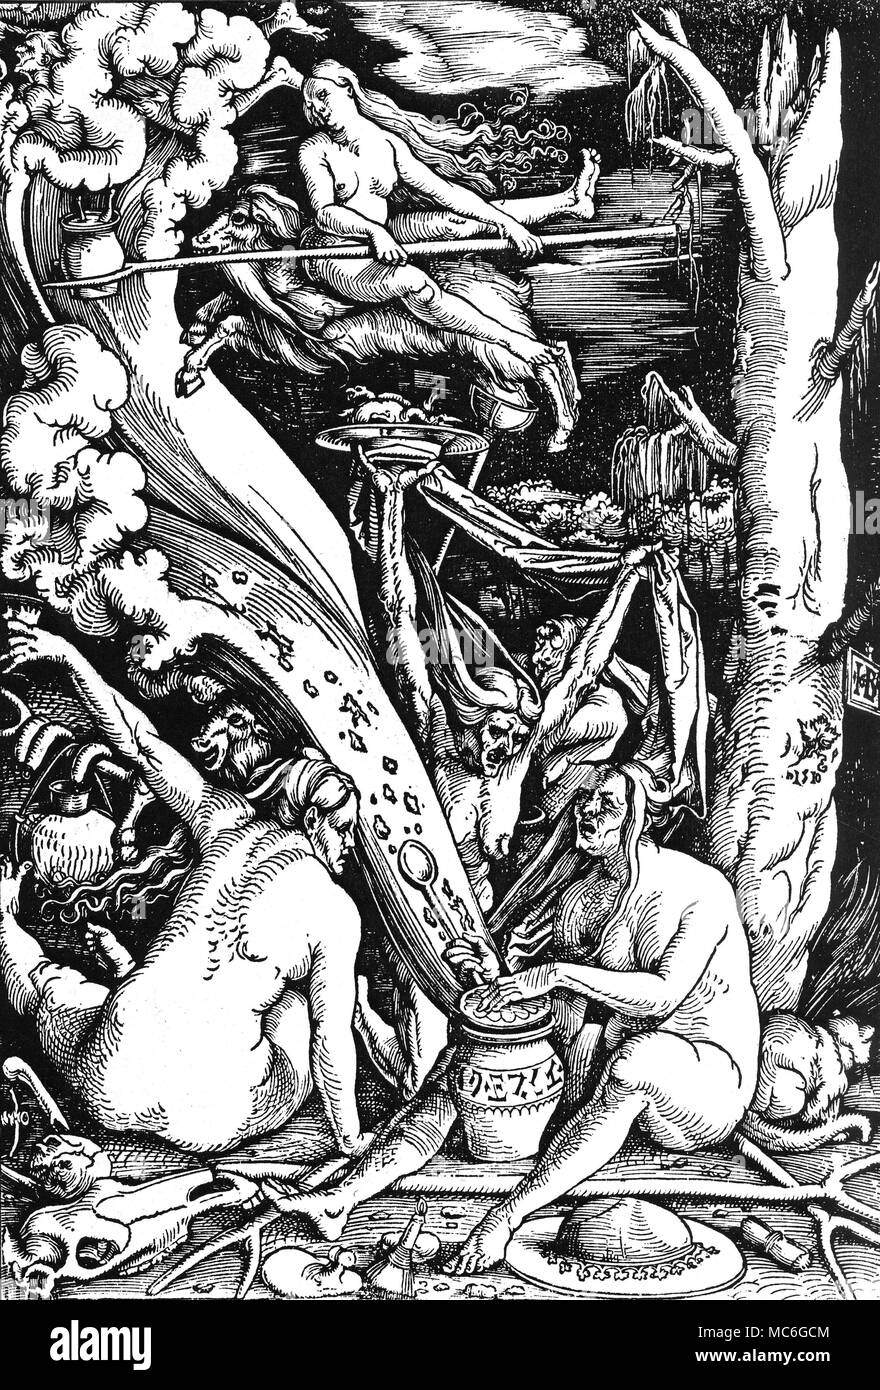 La sorcellerie - TRANSVECTING "sorcières les sorcières" - gravure sur bois par Hans Baldung Grien, 1510. Les sorcières sont deux transvecting - une apparemment sur un nuage, l'autre sur le dos d'une chèvre (c'est certainement un diable dans le déguisement). La sorcière au premier plan (à droite) est l'ouverture d'une sorcière-jar, à partir de laquelle diffuser toutes sortes de mal ; le pot est inscrit avec l'Hébreu-comme des lettres, soulignant le fait que les Juifs ont été considérés peu plus favorablement que les sorcières, au début du xvie siècle. Derrière cette chasse aux sorcières est un chat familier. Dans l'immédiat avant-plan est un miroir magique, miroir ou scrying, permettant de voir dans la f Banque D'Images